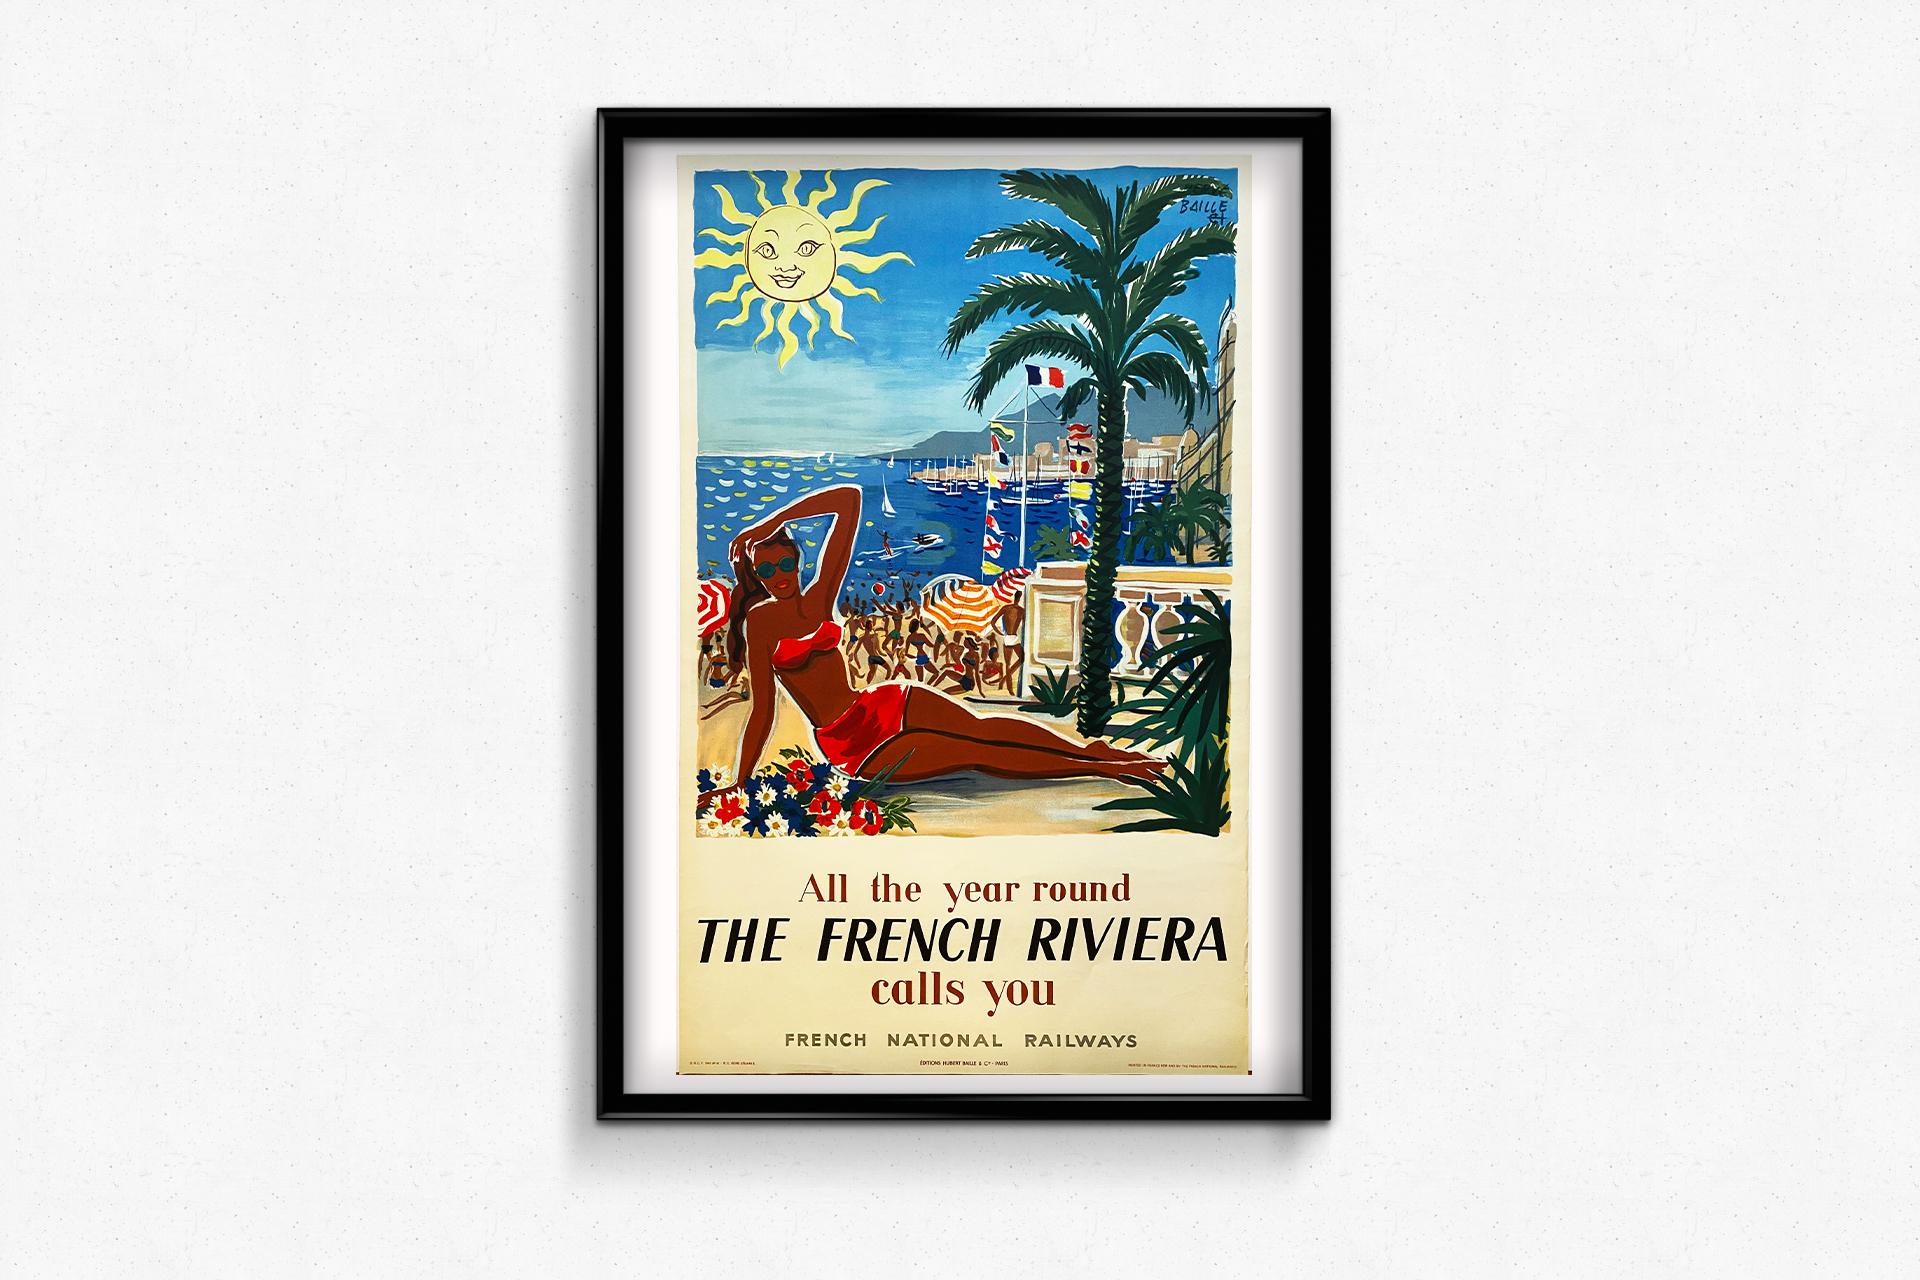 Originalplakat von Hervé Baille 🇫🇷 (1896-1974), einem französischen Zeichner und Graveur. Während seiner Karriere war er Mitglied des Zeichenkomitees des Salon des Humoristes und illustrierte in den 1940er Jahren Plakate für Eisenbahnen und